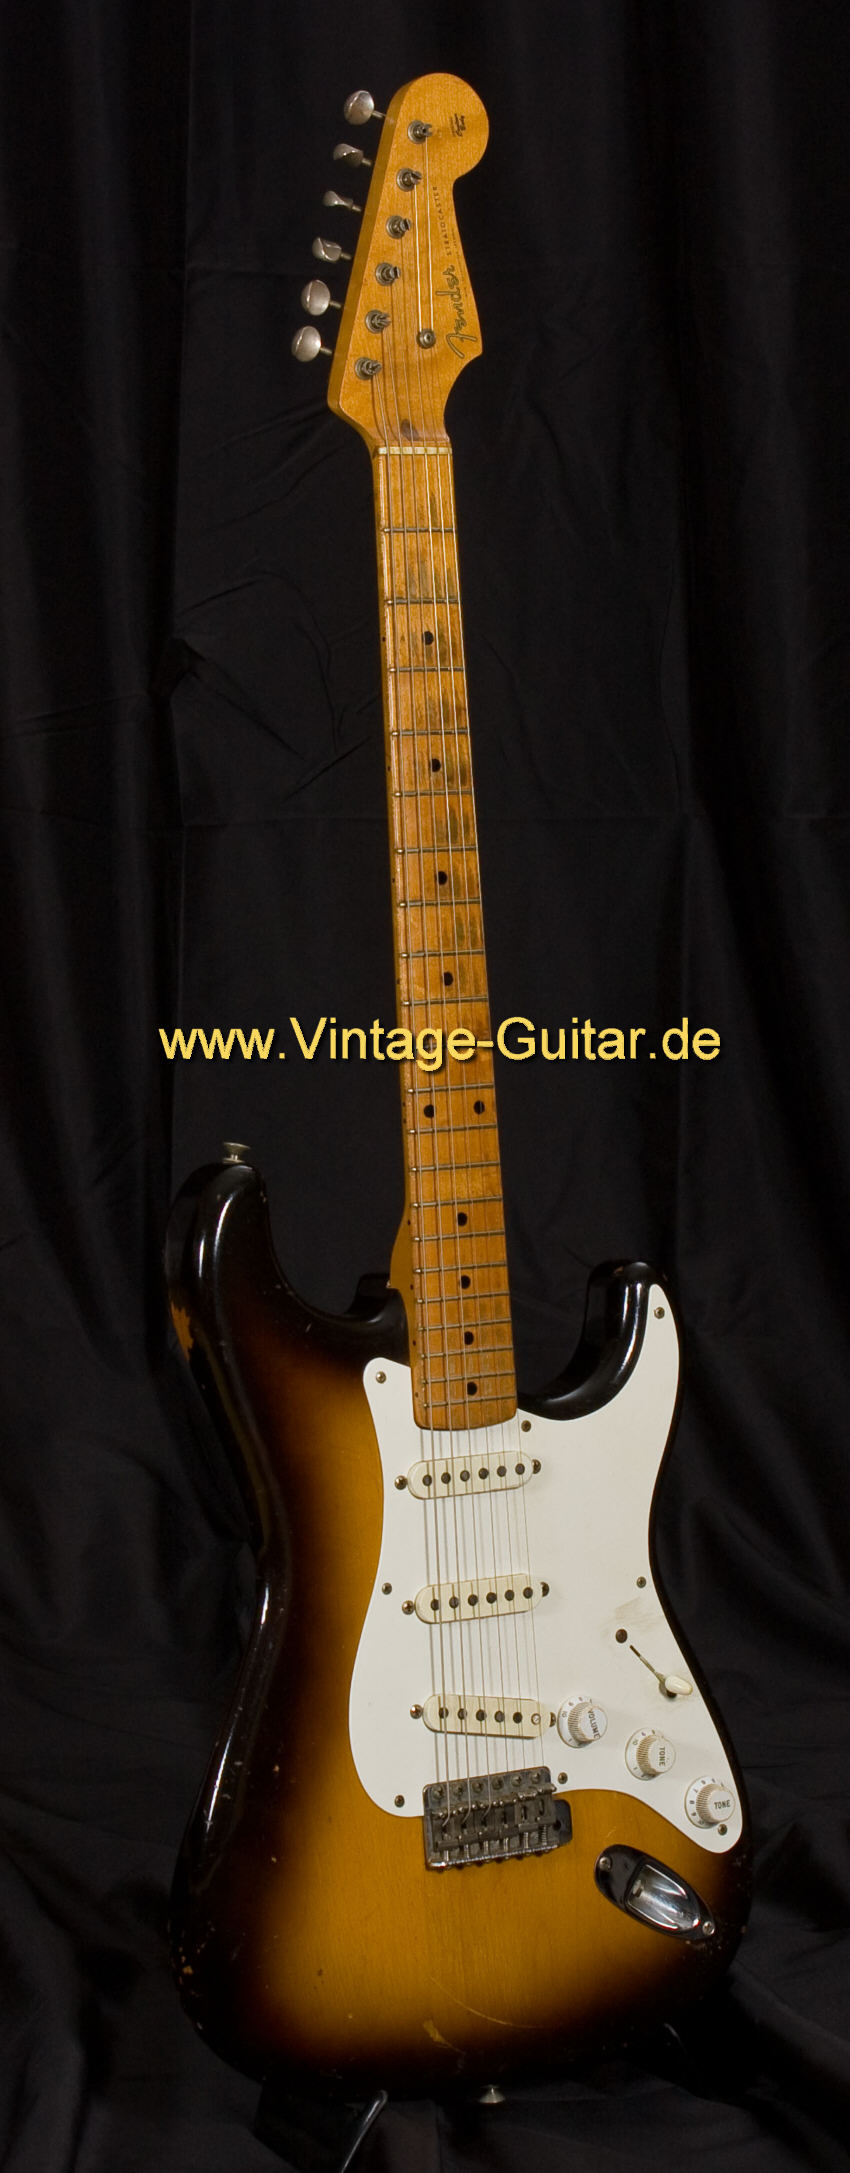 A-Fender-Stratocaster-1956-sunburst-a.jpg